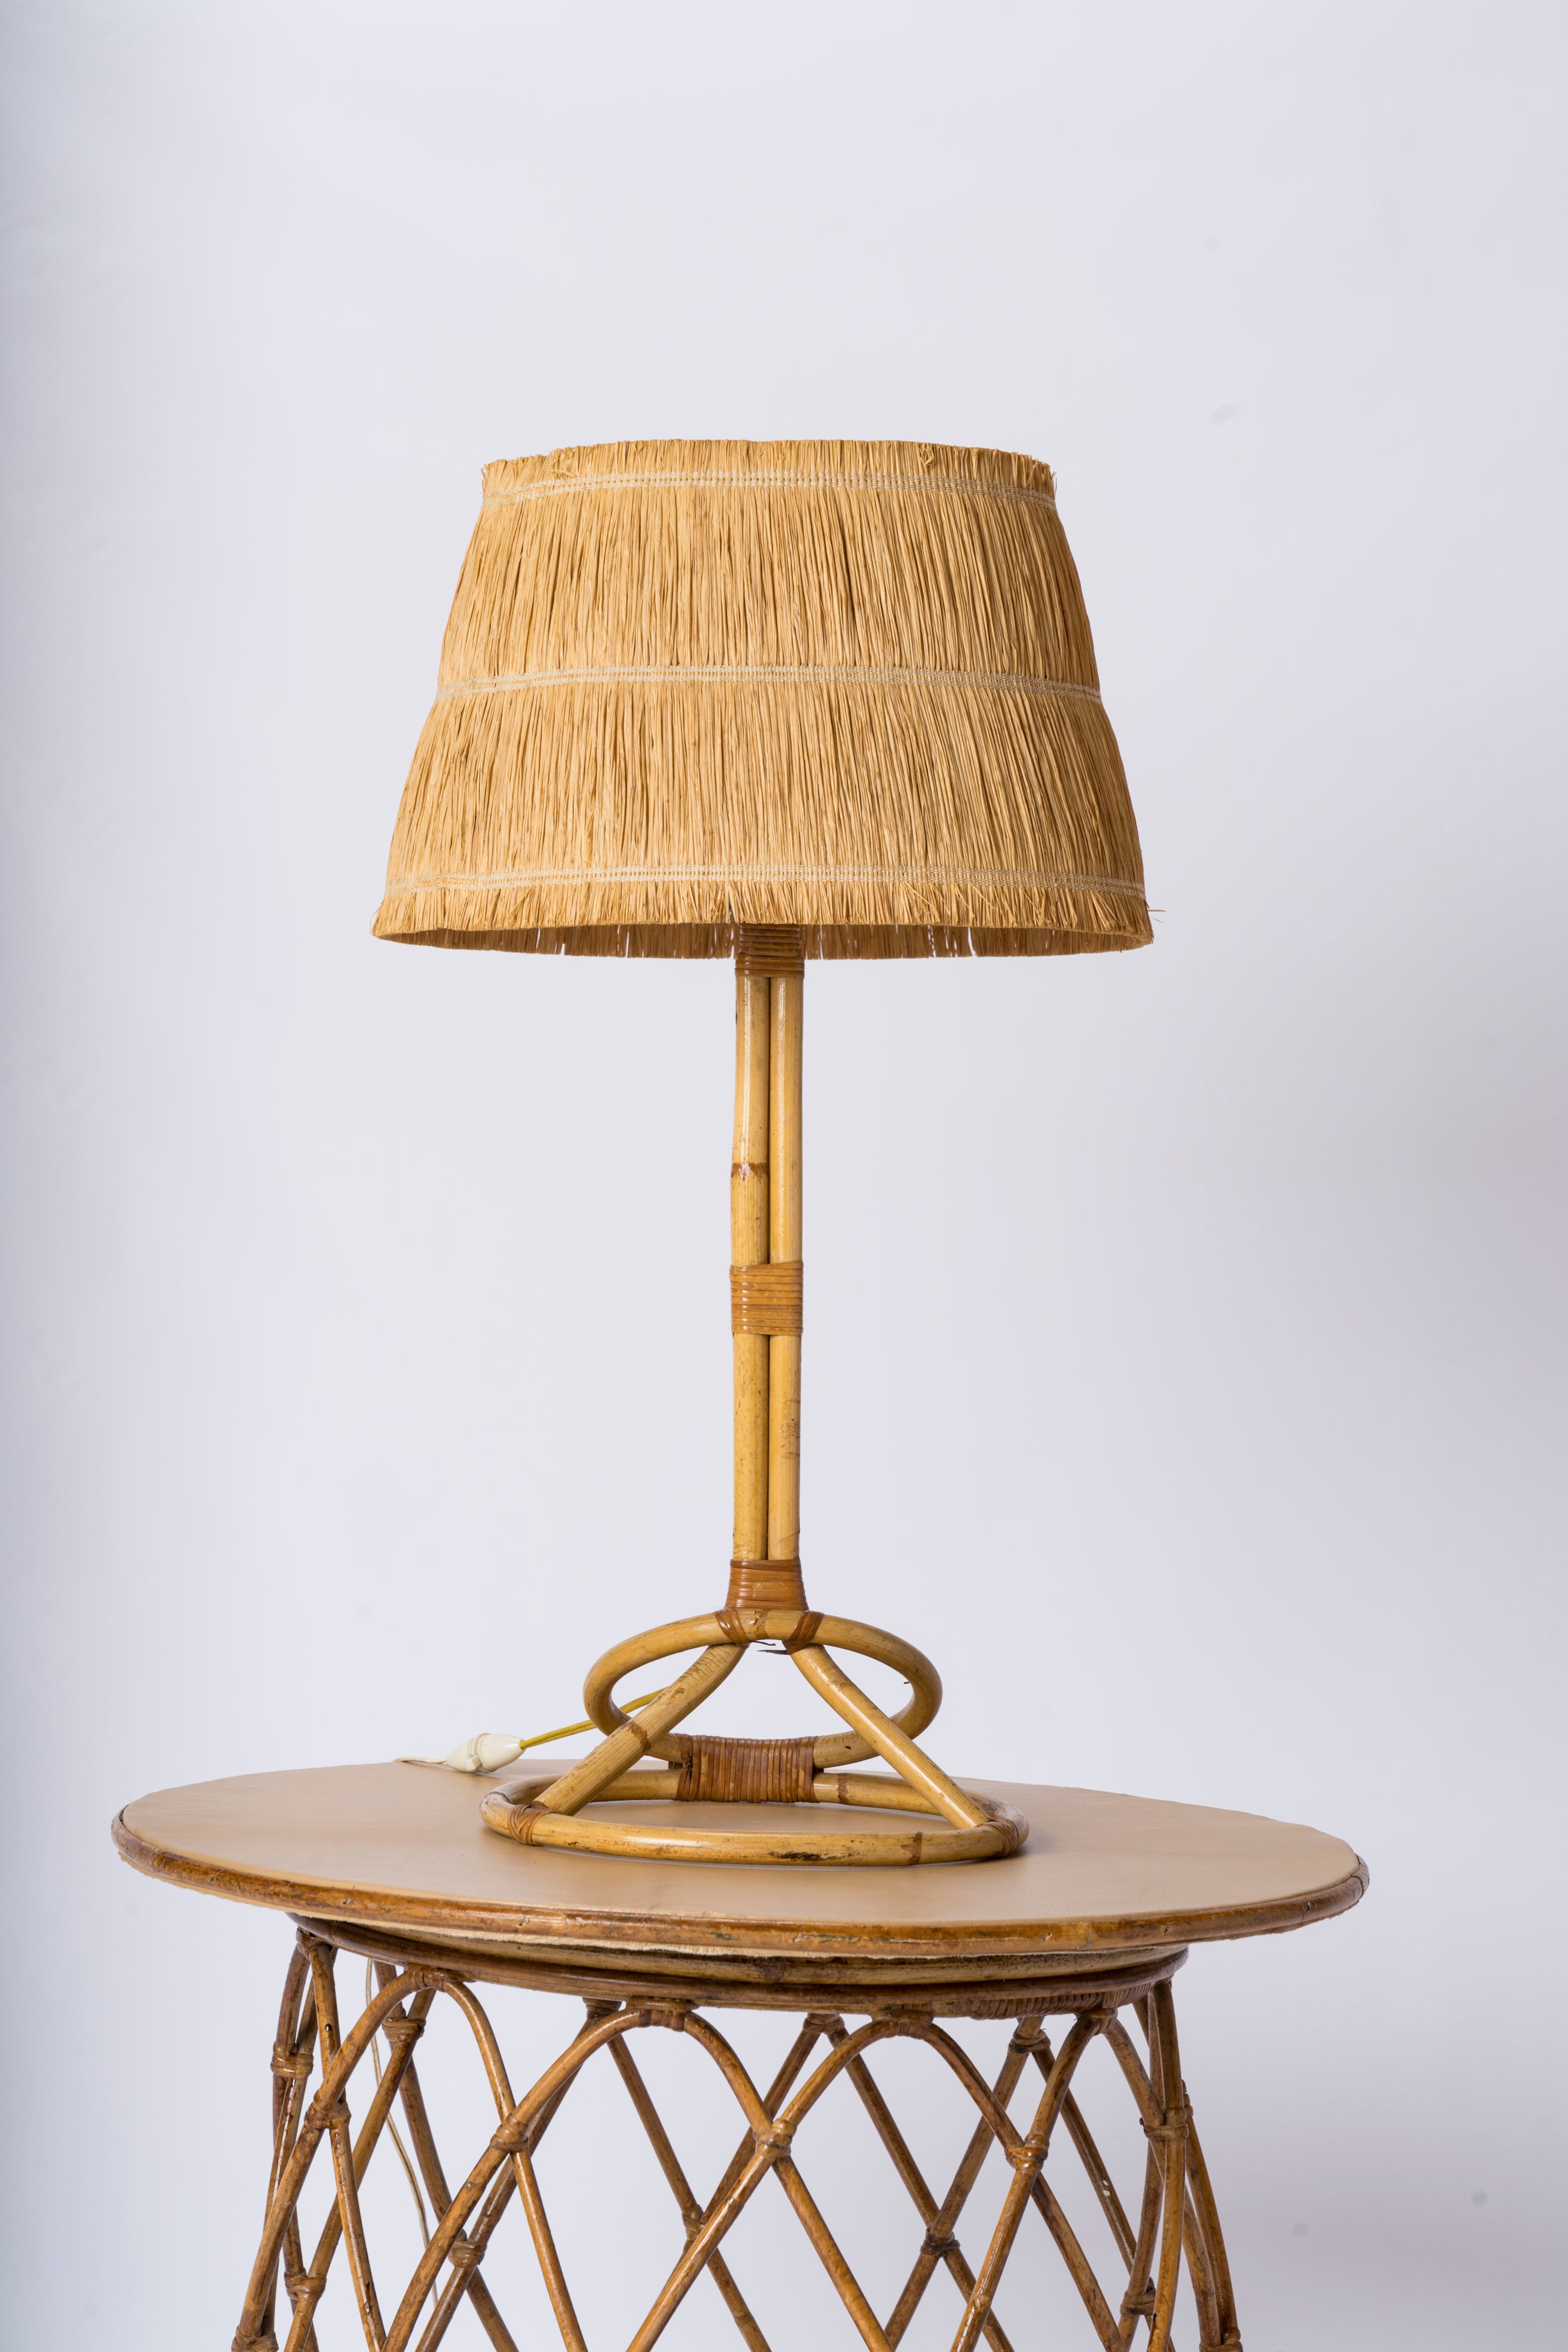 Tall Rattan Table Lamp w. Raffia Shade - France 1950's